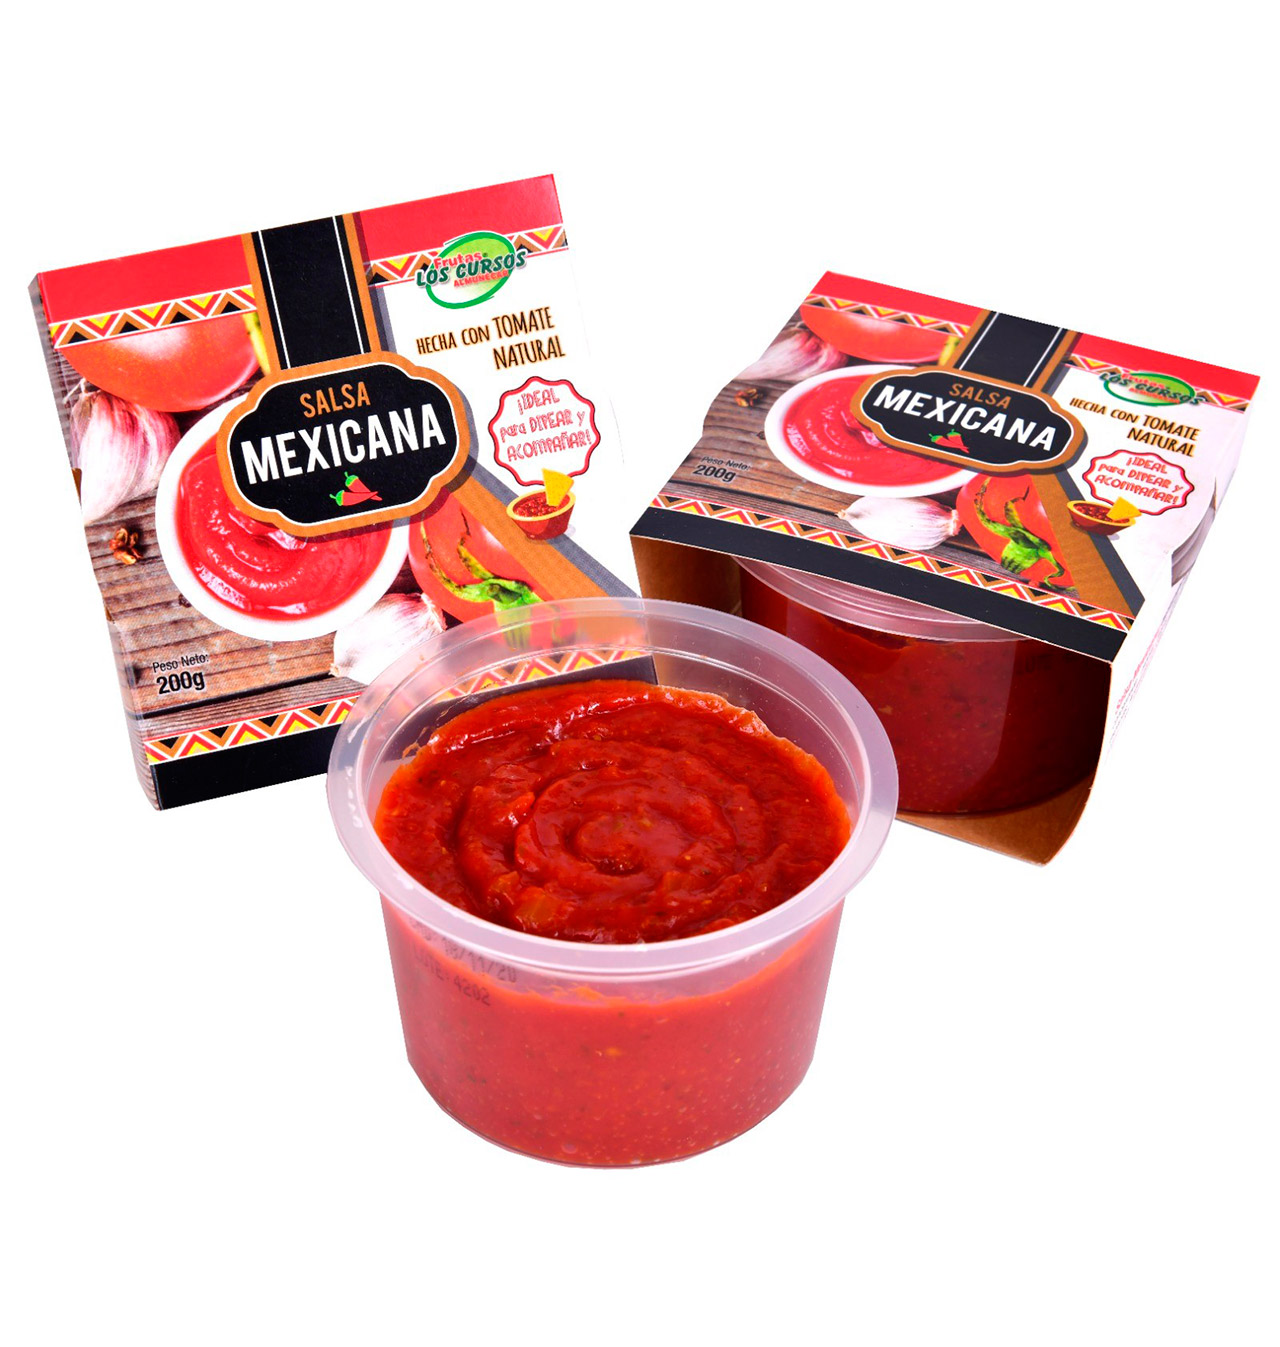 la mexicana salsa recipe change